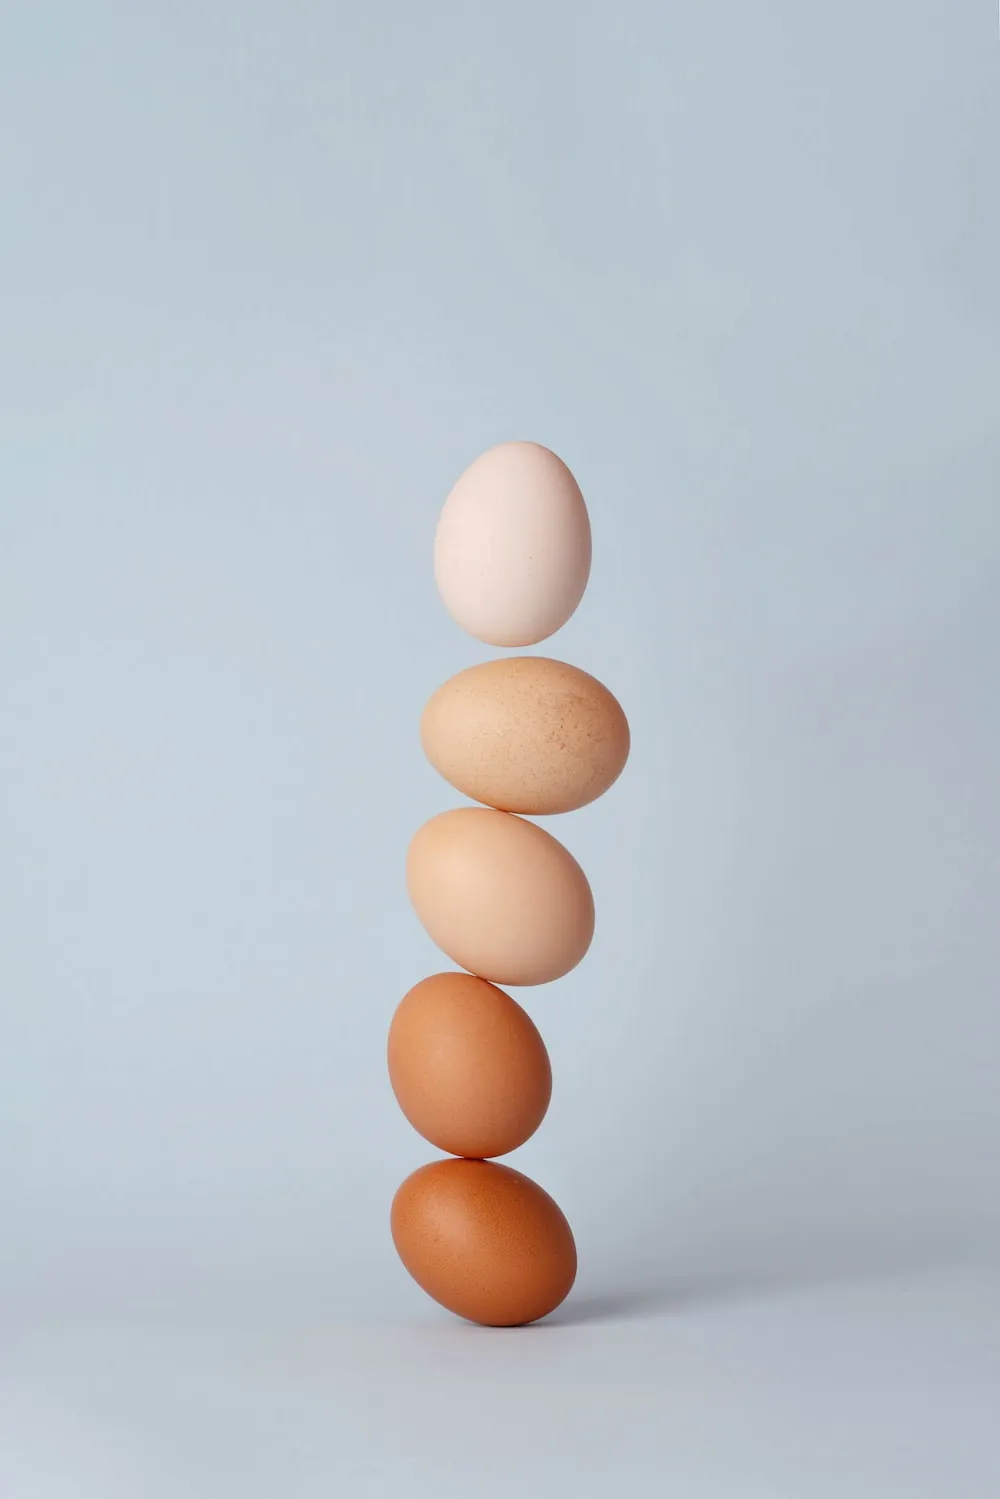 Hnědá a bílá vejce - je mezi nimi rozdíl?